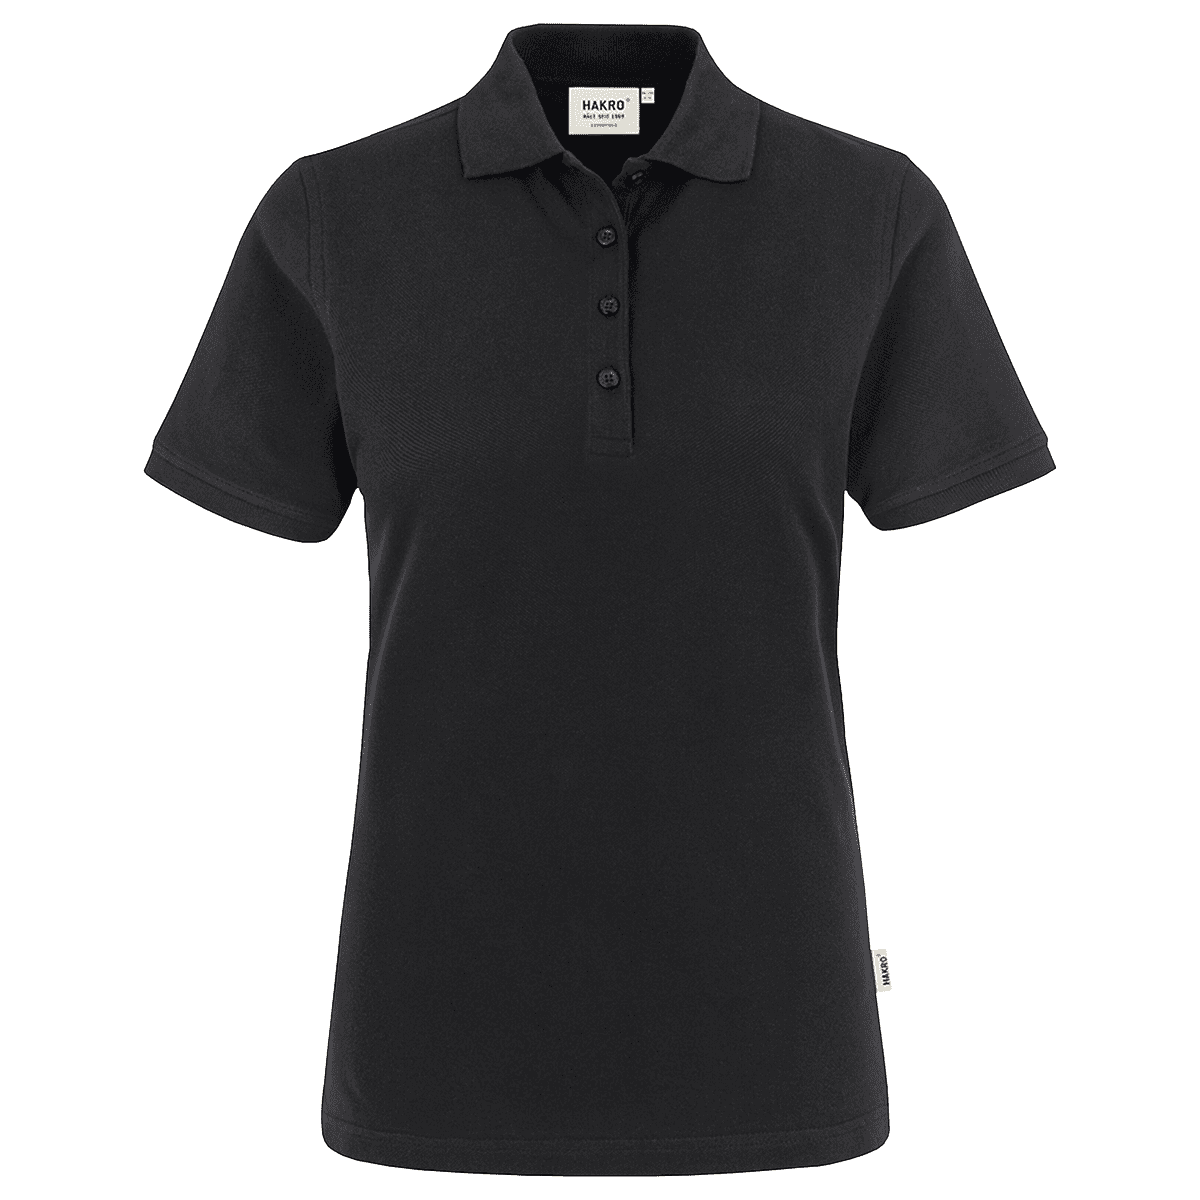 Damen Polo-Shirt Classic schwarz